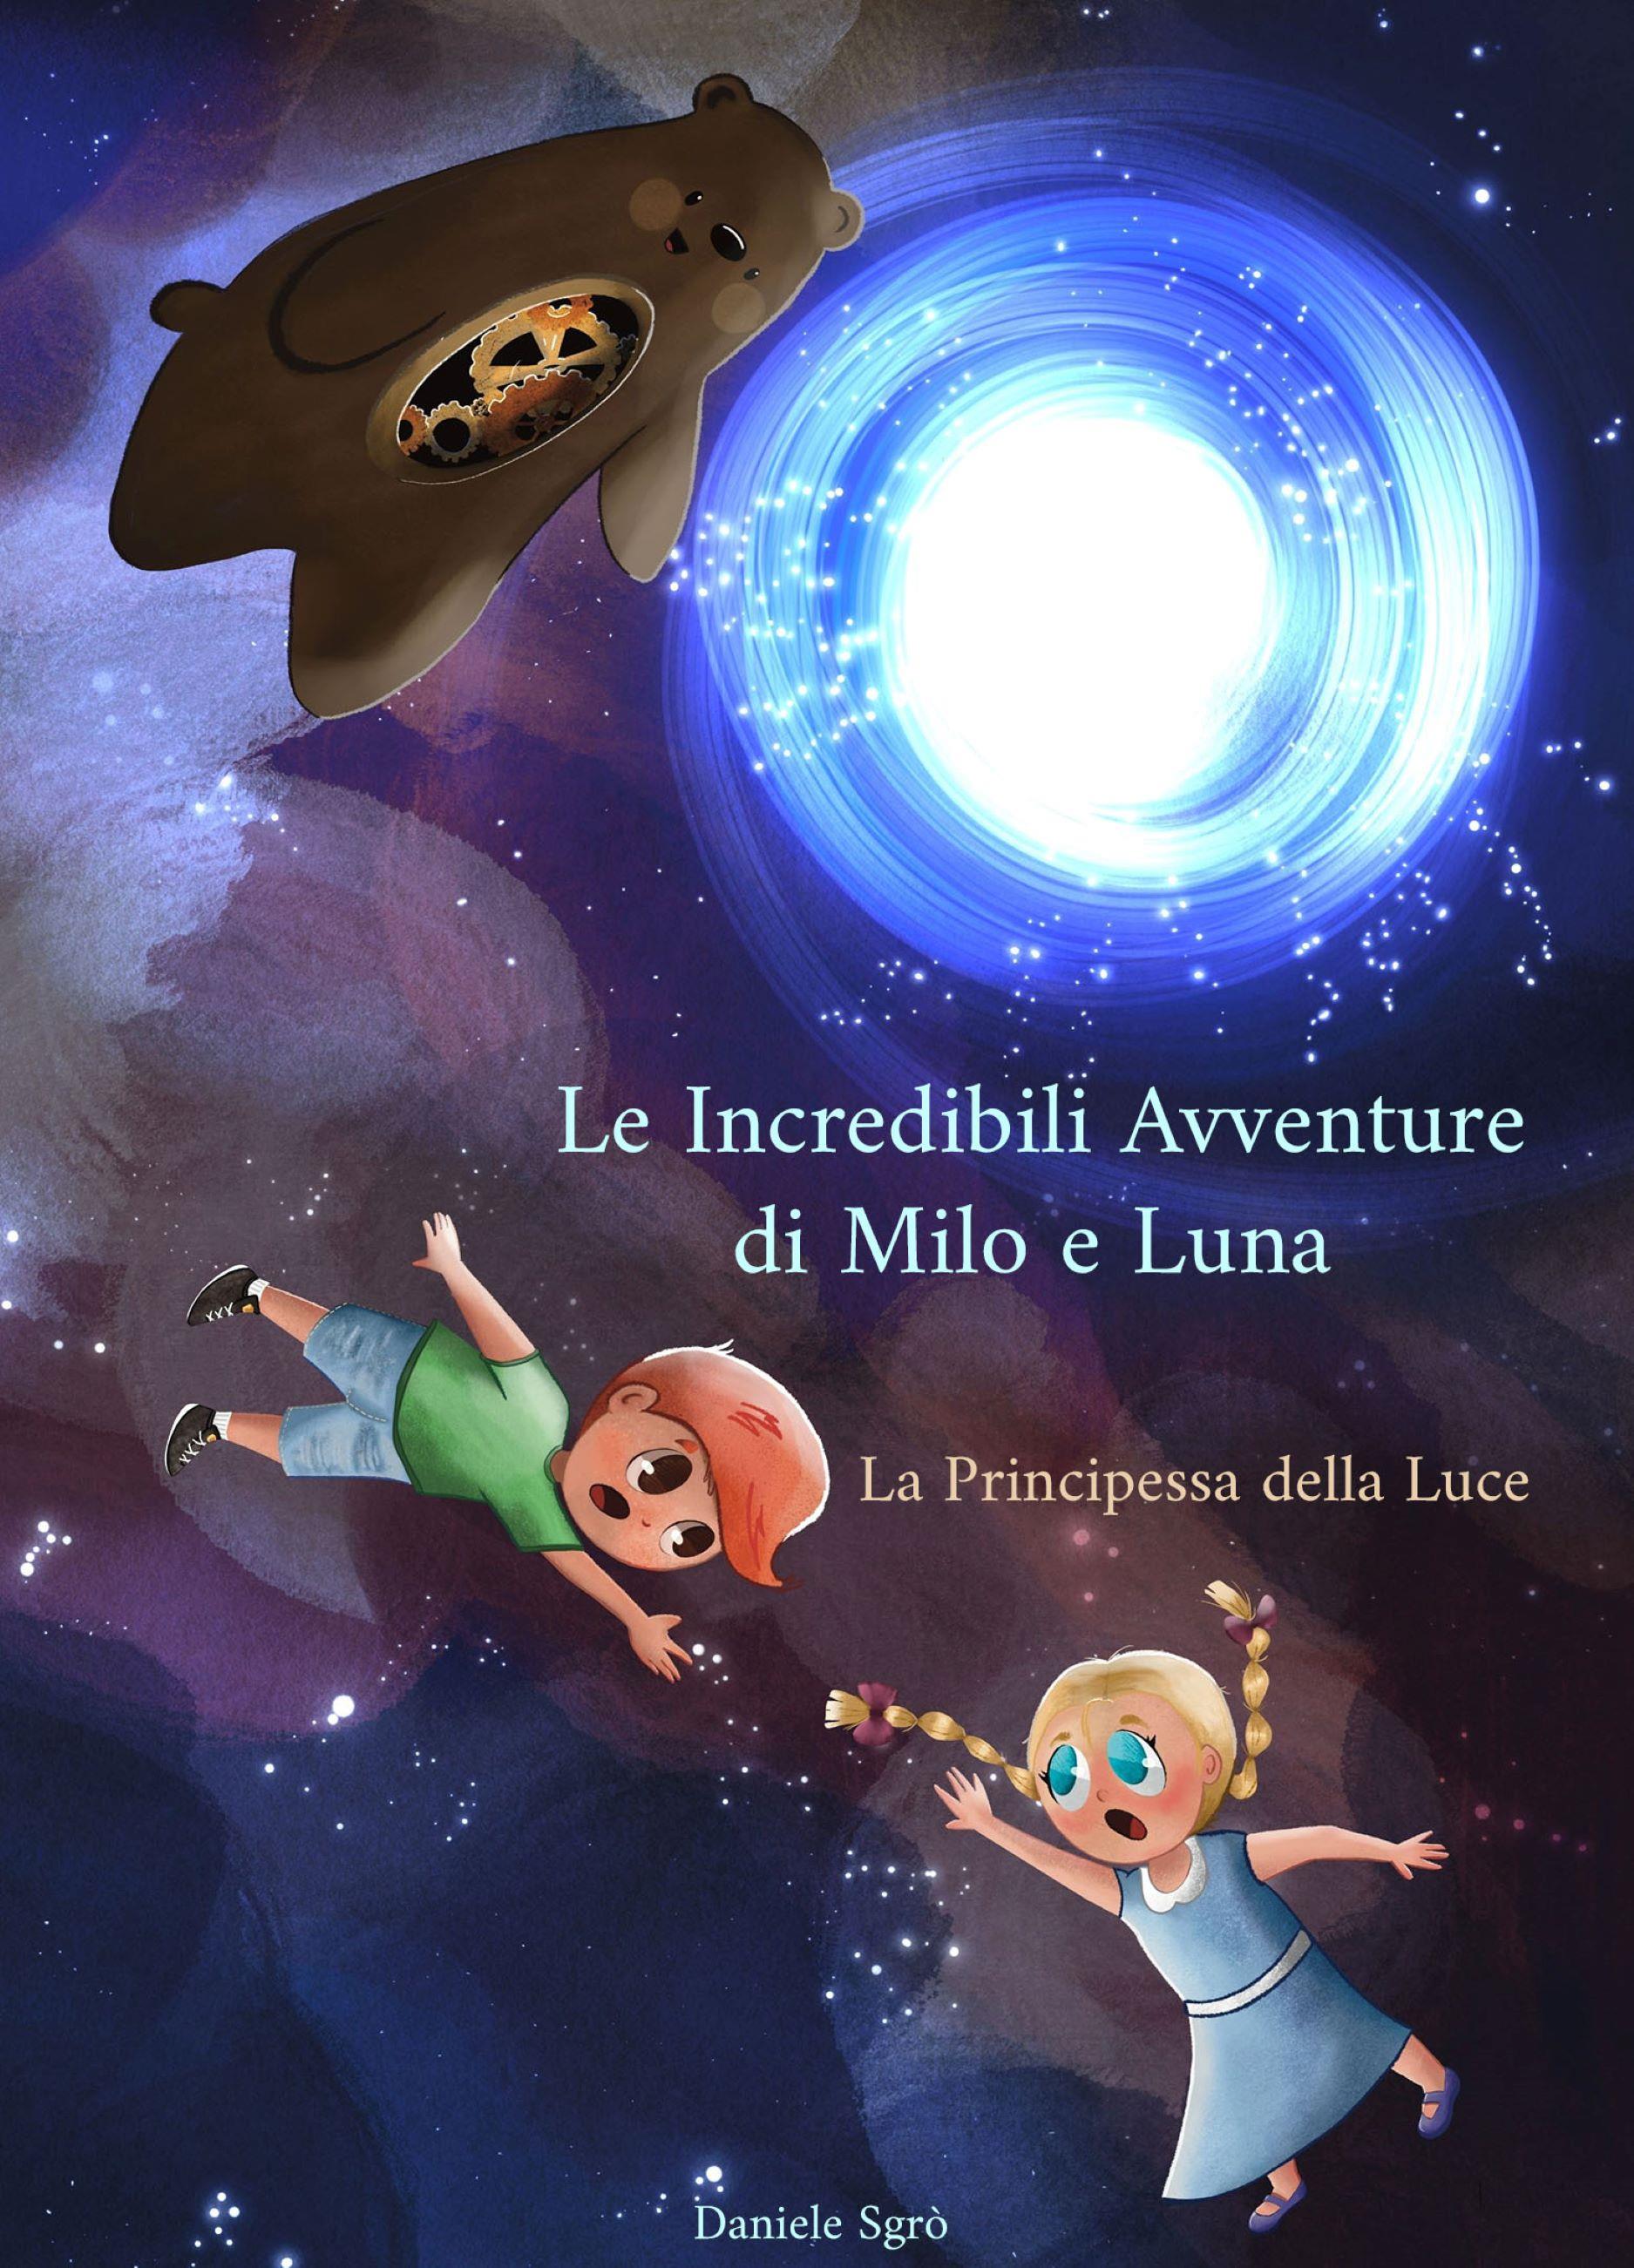 Le incredibili avventure di Milo e Luna